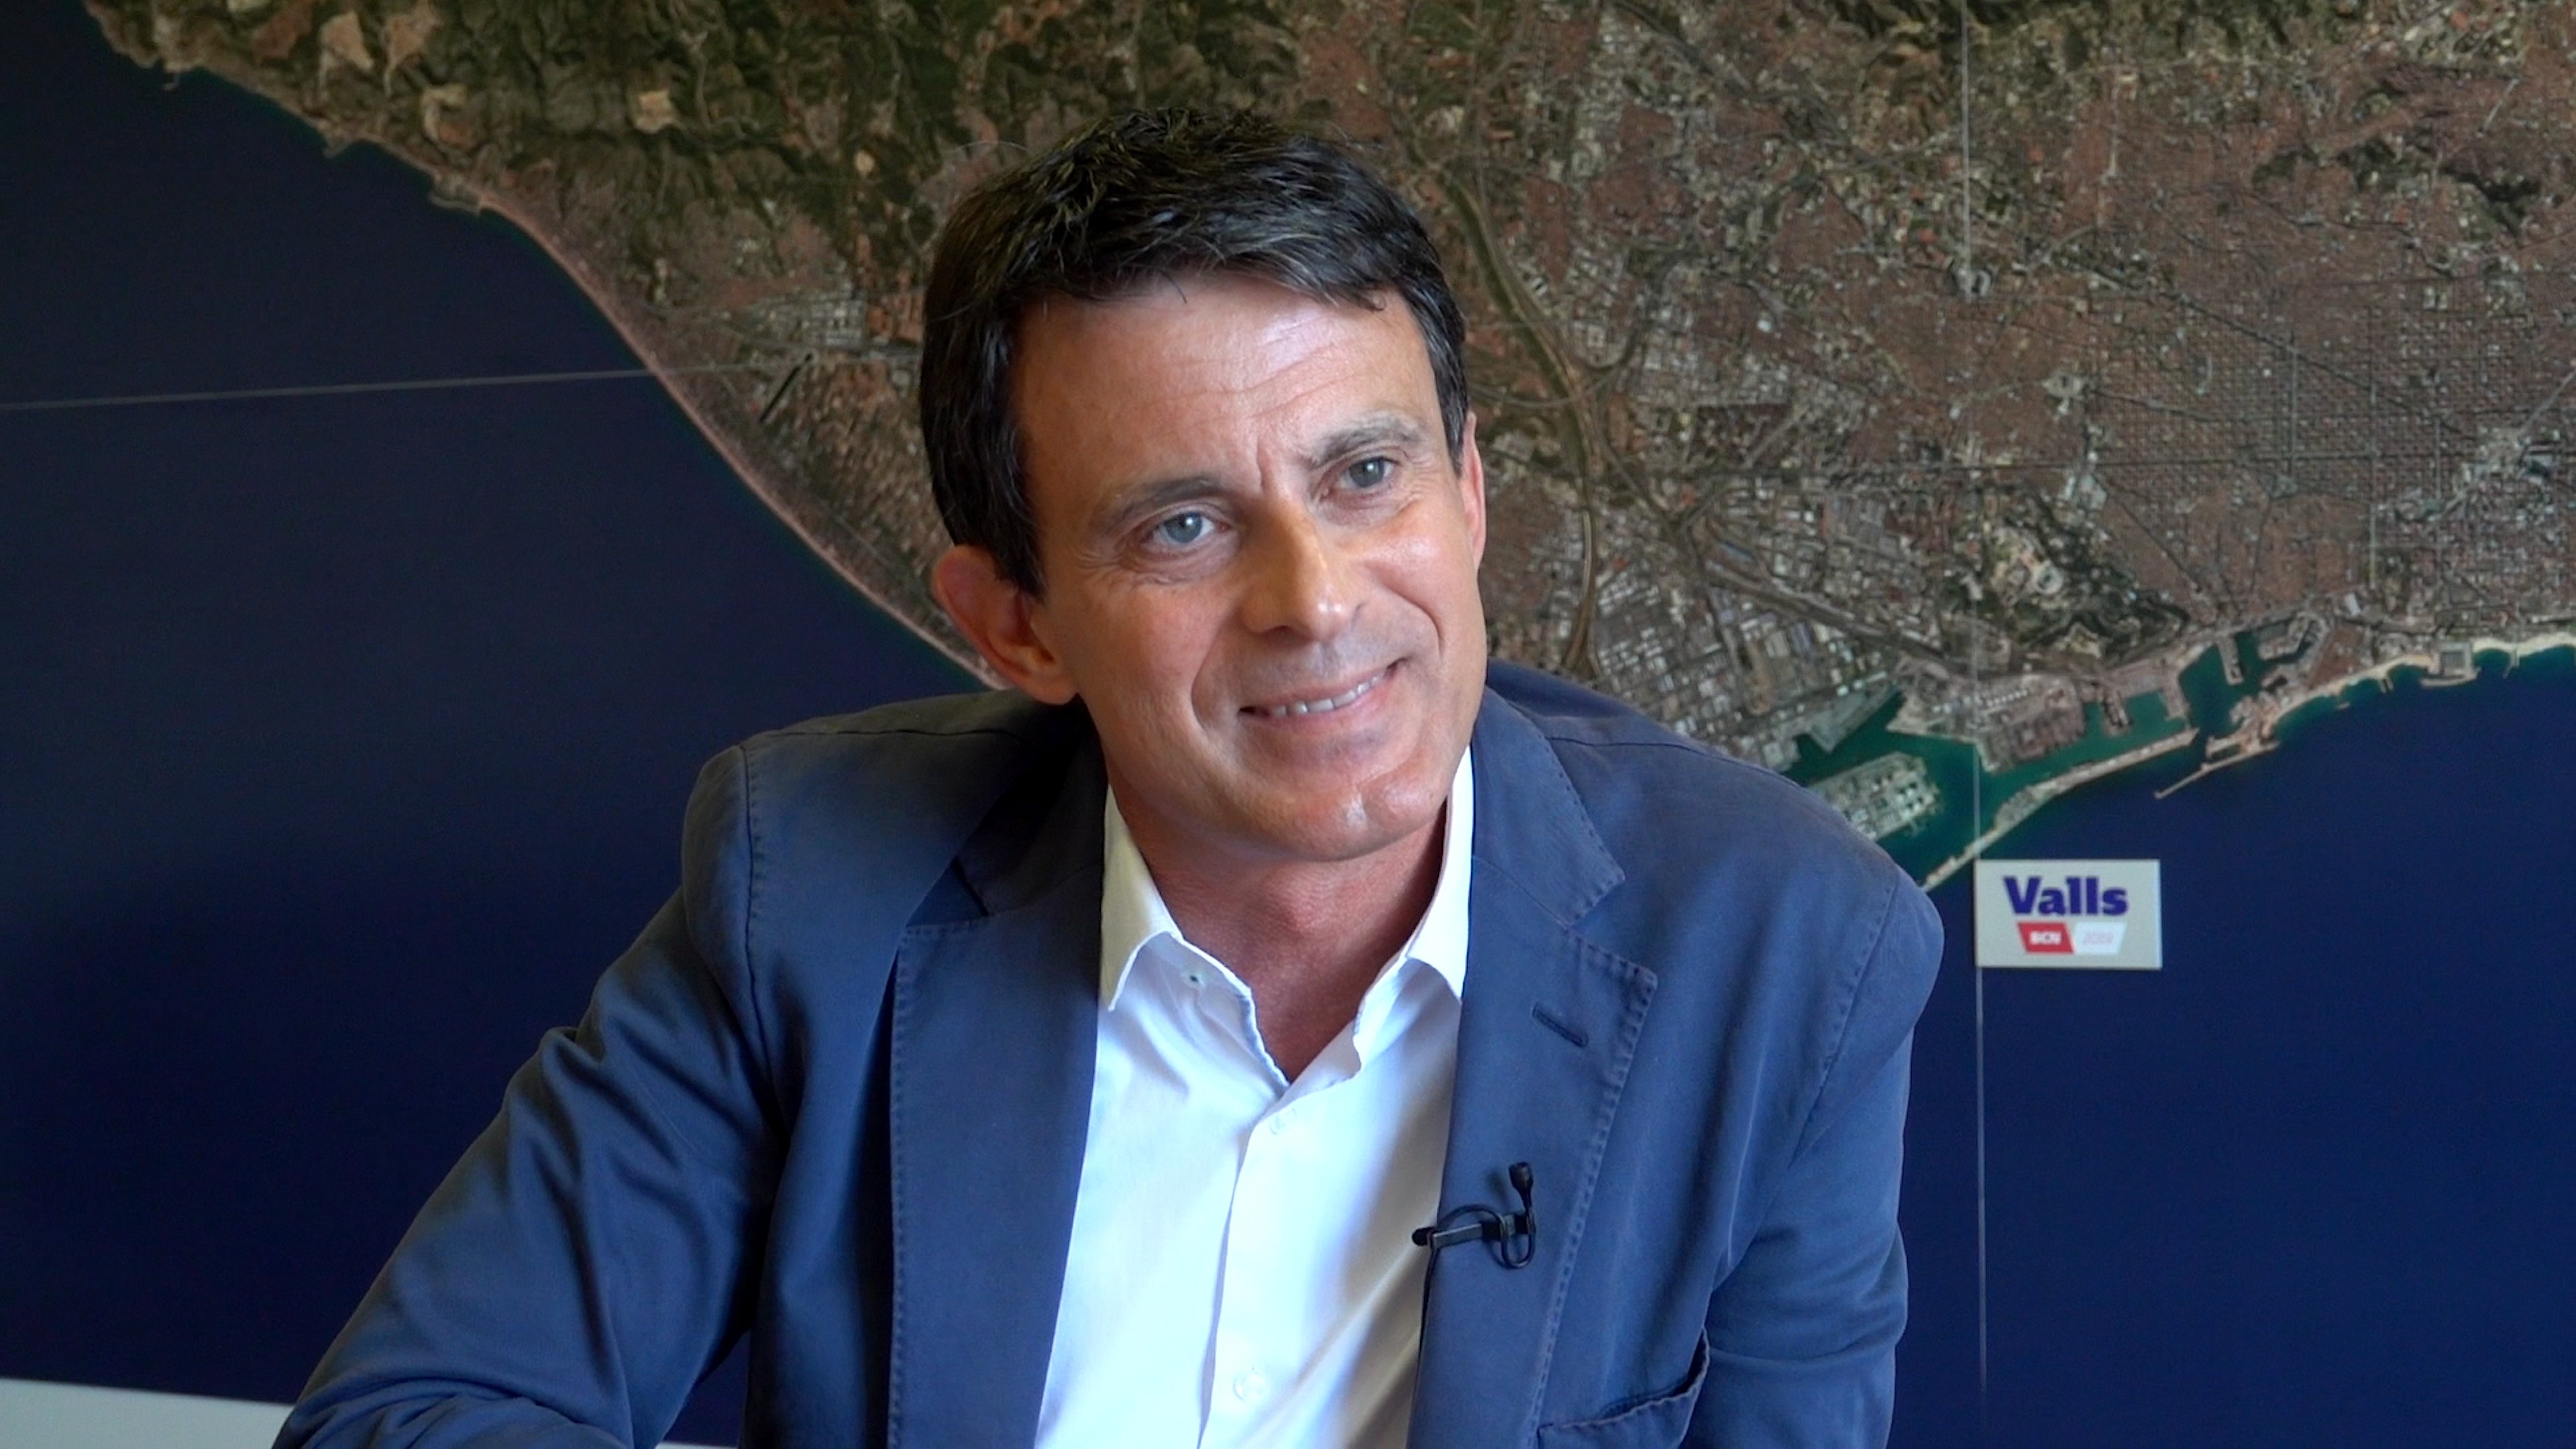 Valls: "Soc més que el candidat de Ciutadans"